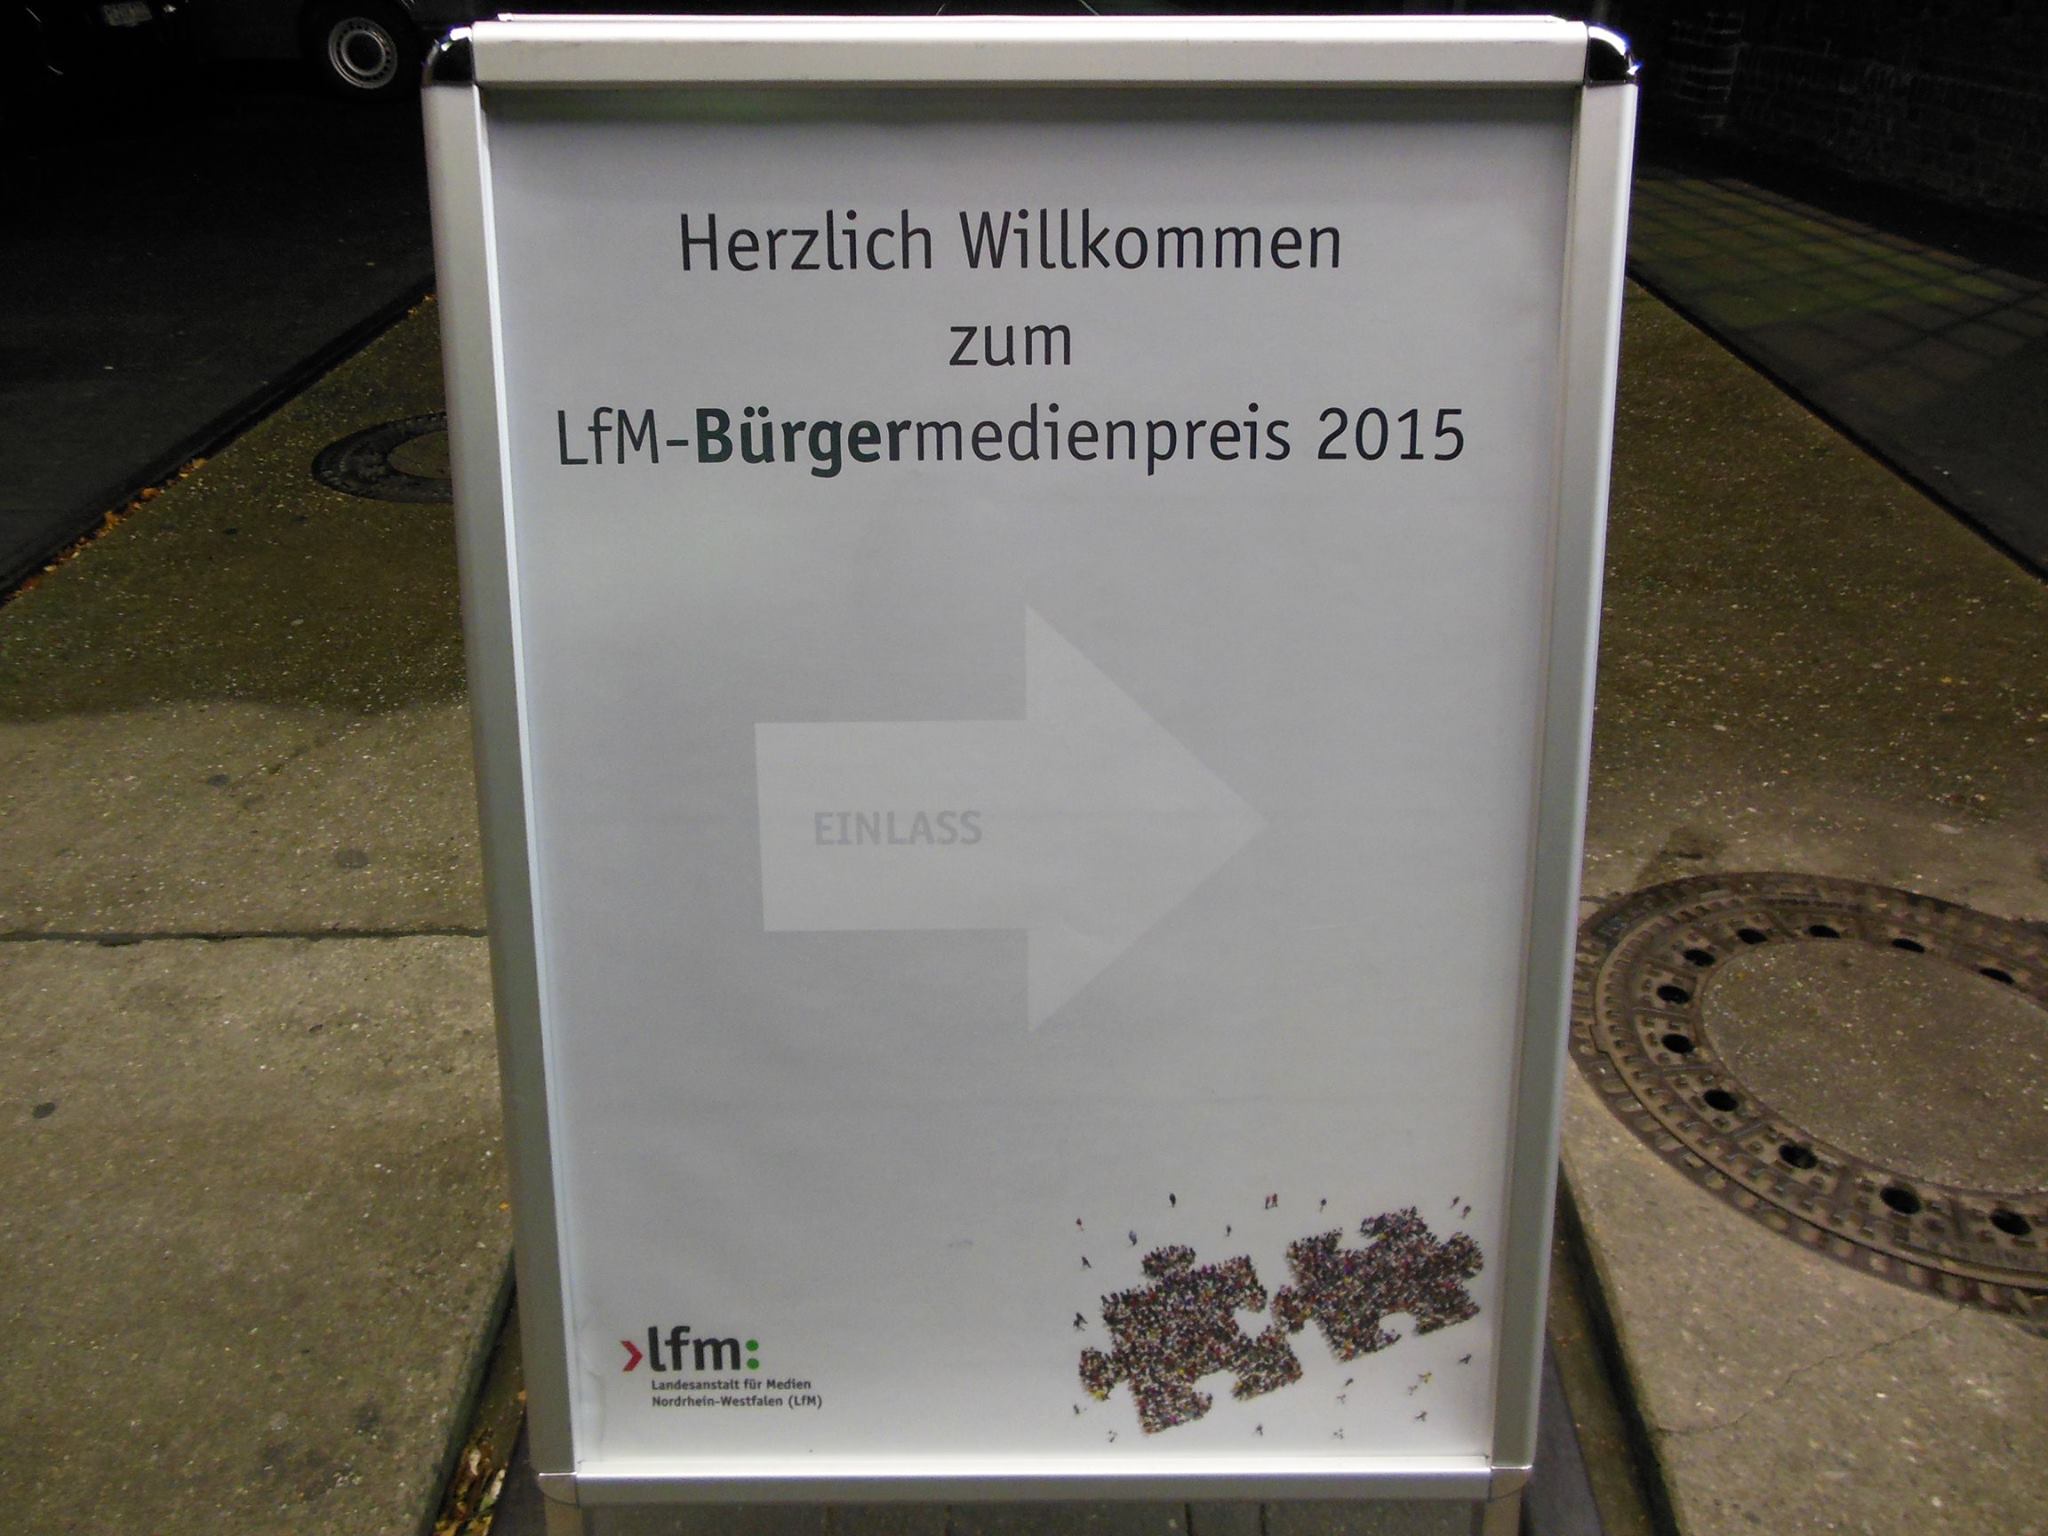 Bürgermedienpreis 2015